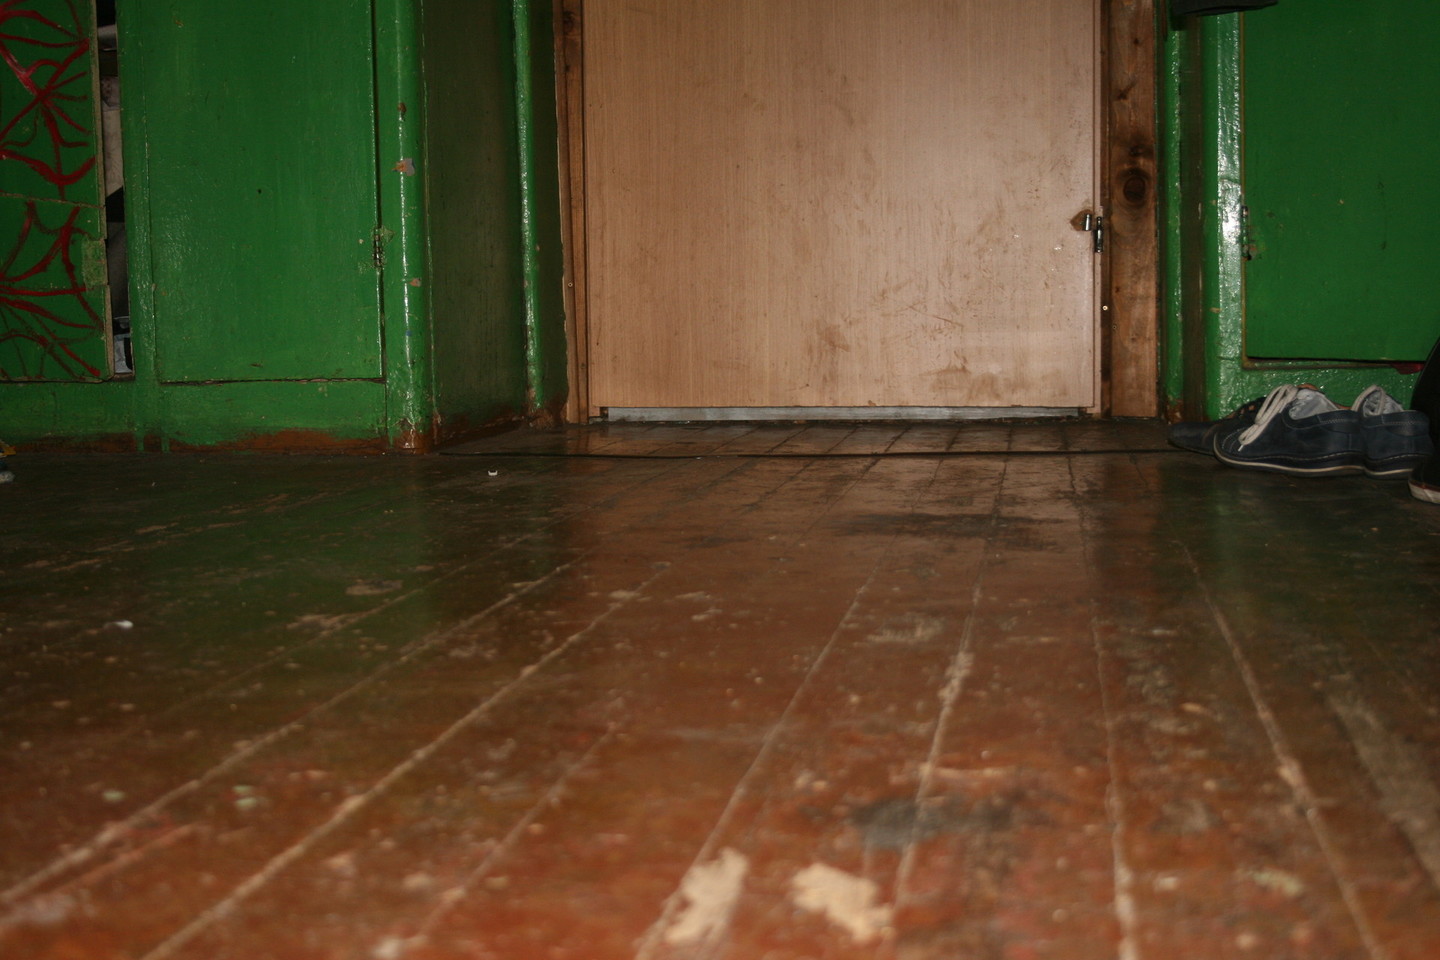 Visi kambariai – su senomis medinėmis grindimis, apsilupusiais radiatoriais ir langais, pro kuriuos švilpauja vėjai.<br>Lino nuotr.